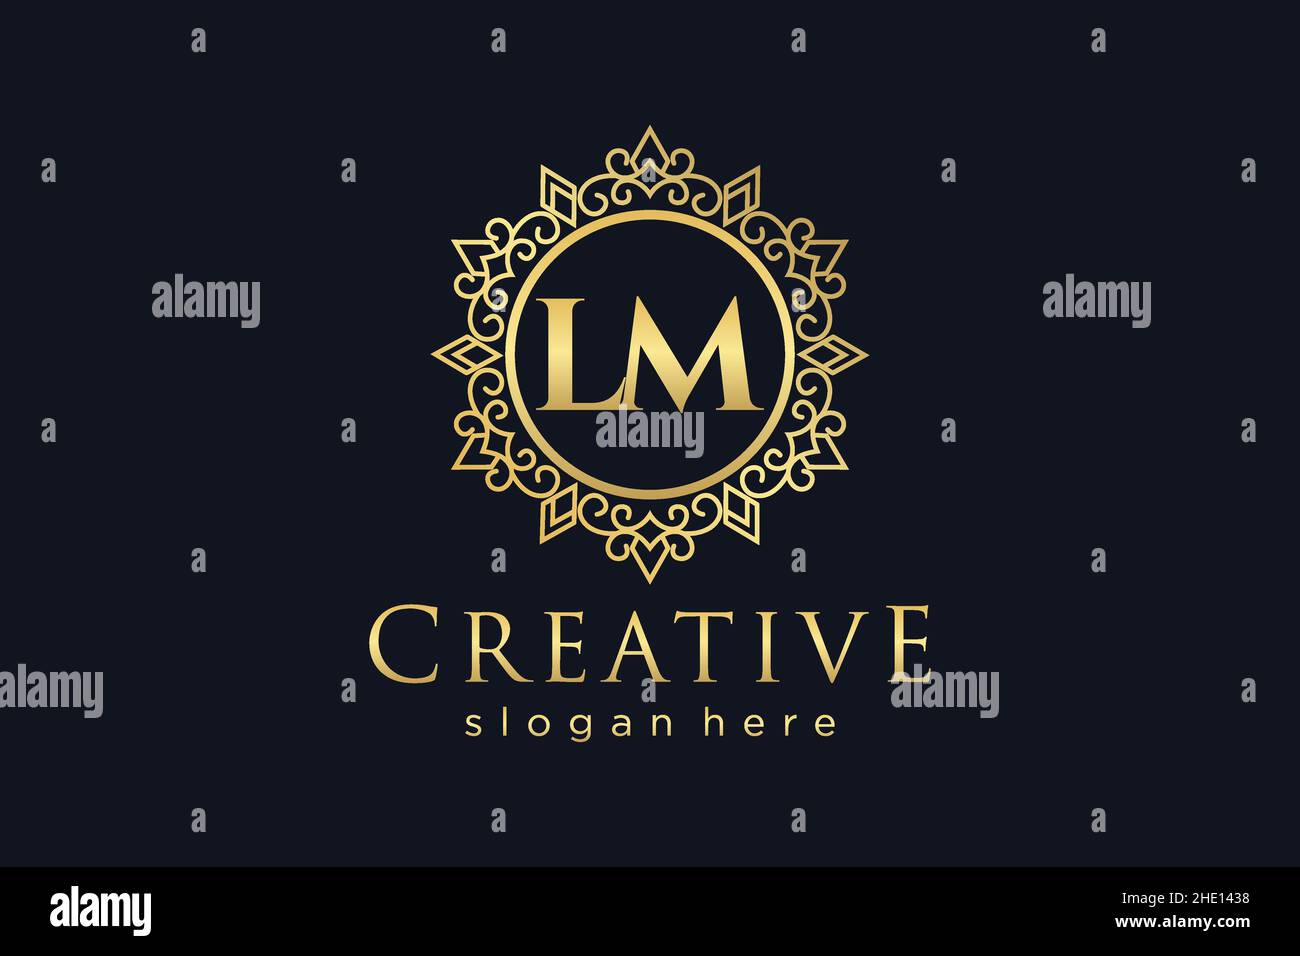 LM Initial Letter Luxury calligraphic feminine floral hand drawn heraldic monogram antique vintage style luxury logo design Premium Stock Vector